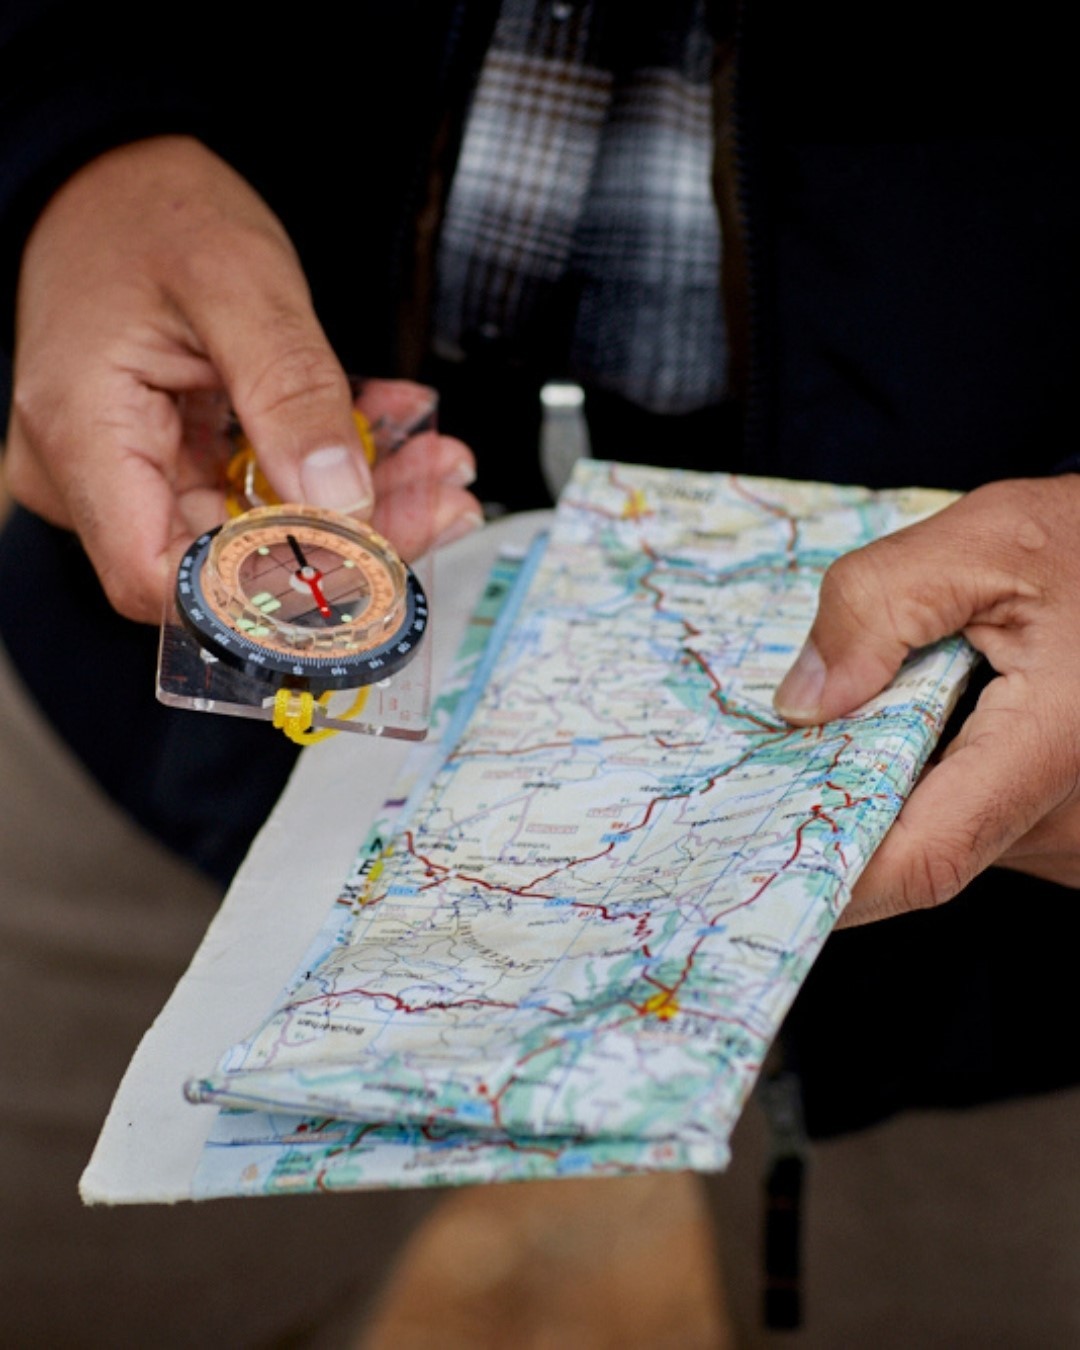 Atlas For Men - Comment est-ce que vous aimez vous orienter en montagne ? Avec une boussole ? Une carte ? Un GPS ? Un sens inné ? Ou bien les 4 ? 😅⁠
.⁠
.⁠
.⁠
.⁠
.⁠
.⁠
.⁠
#orientation #gps #forest #mou...